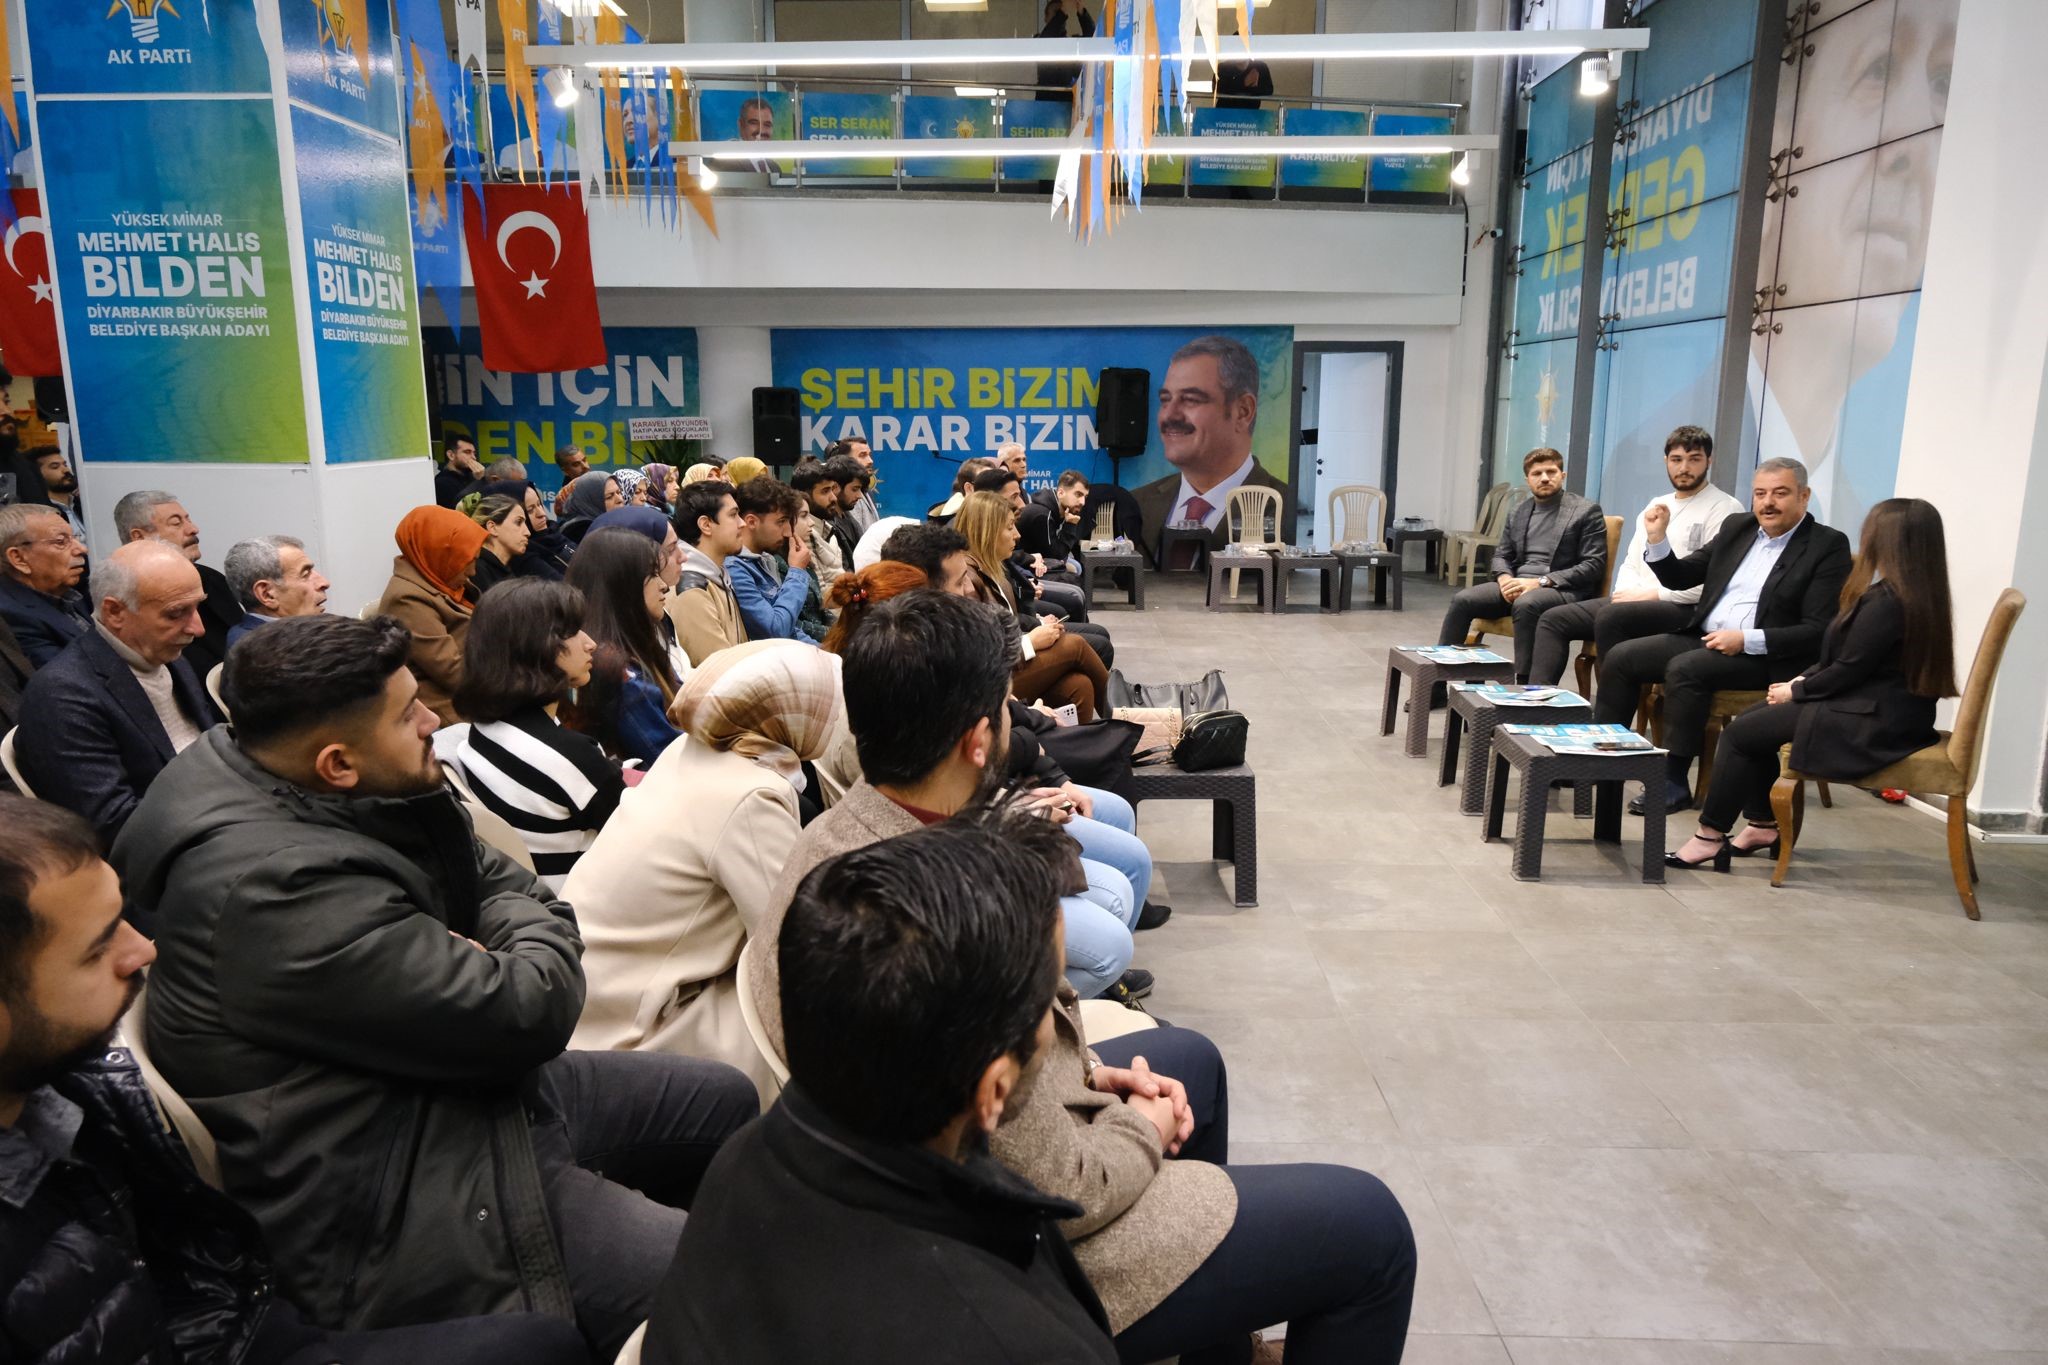 Ak Parti Diyarbakır adayı Bilden: "Gençlerin yeri dağ değil, üniversitelerdir"